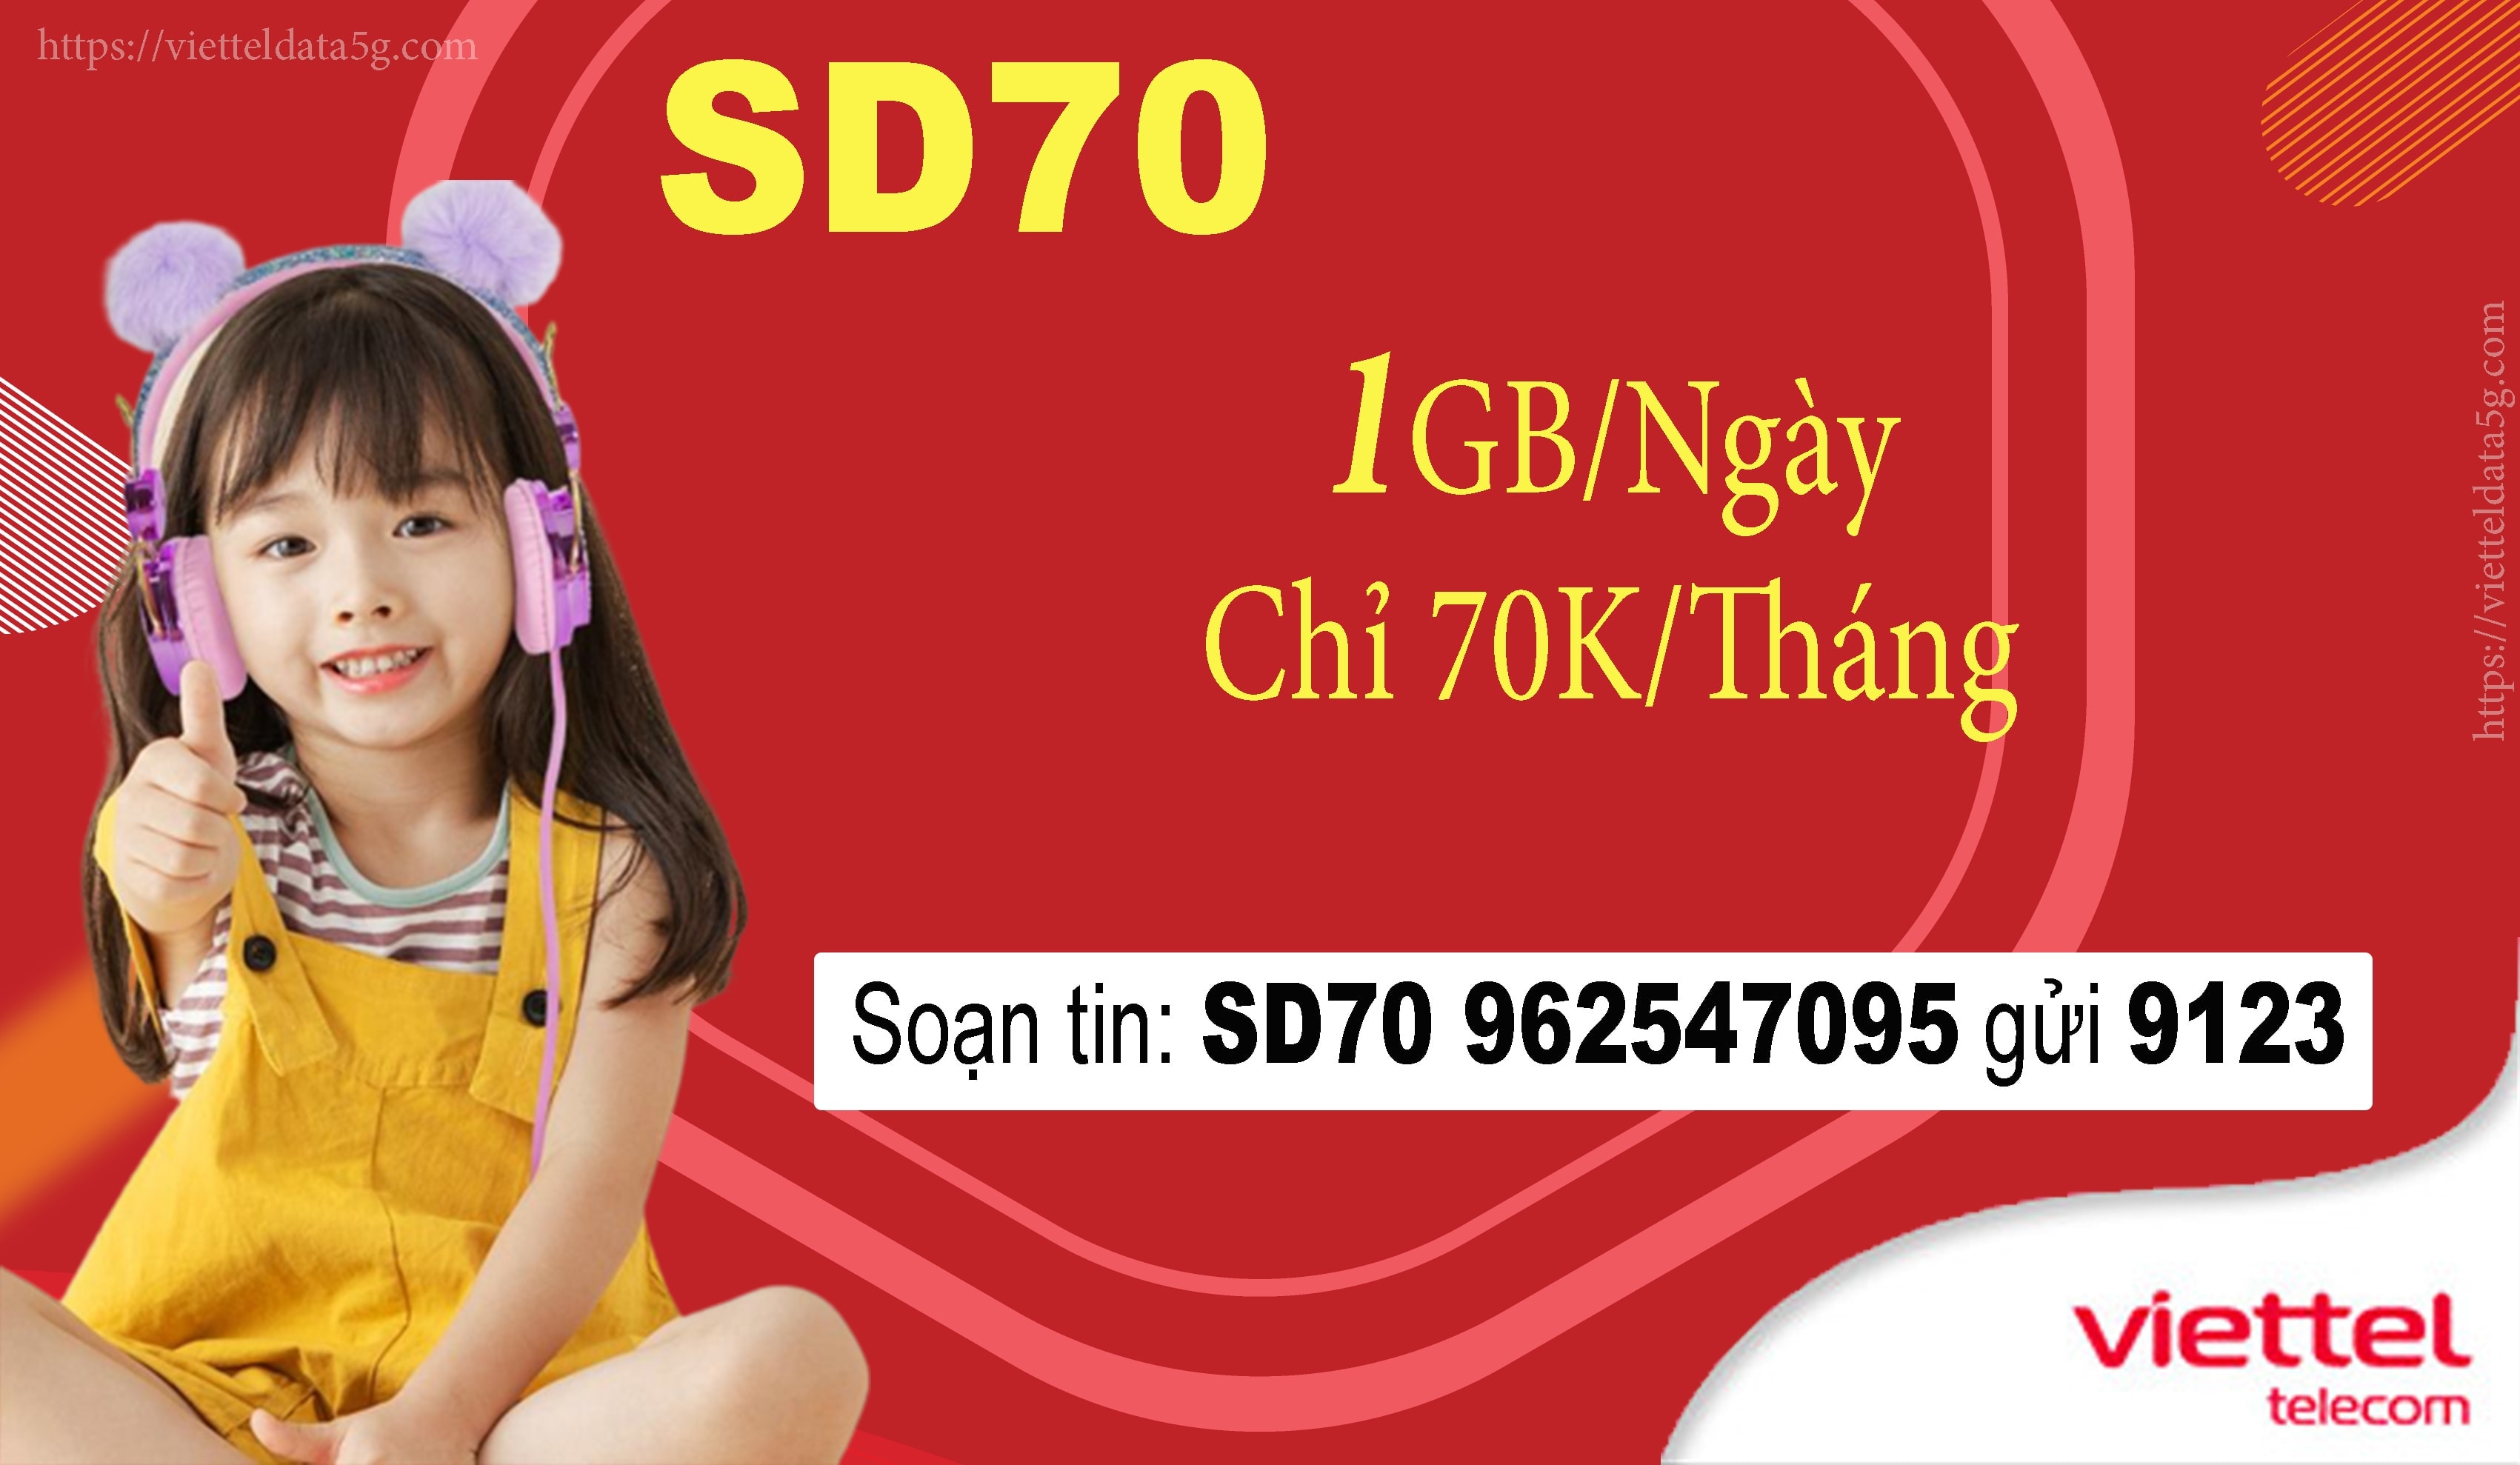 Đăng ký SD70Viettel nhận ngay 30GB data tốc độ cao.